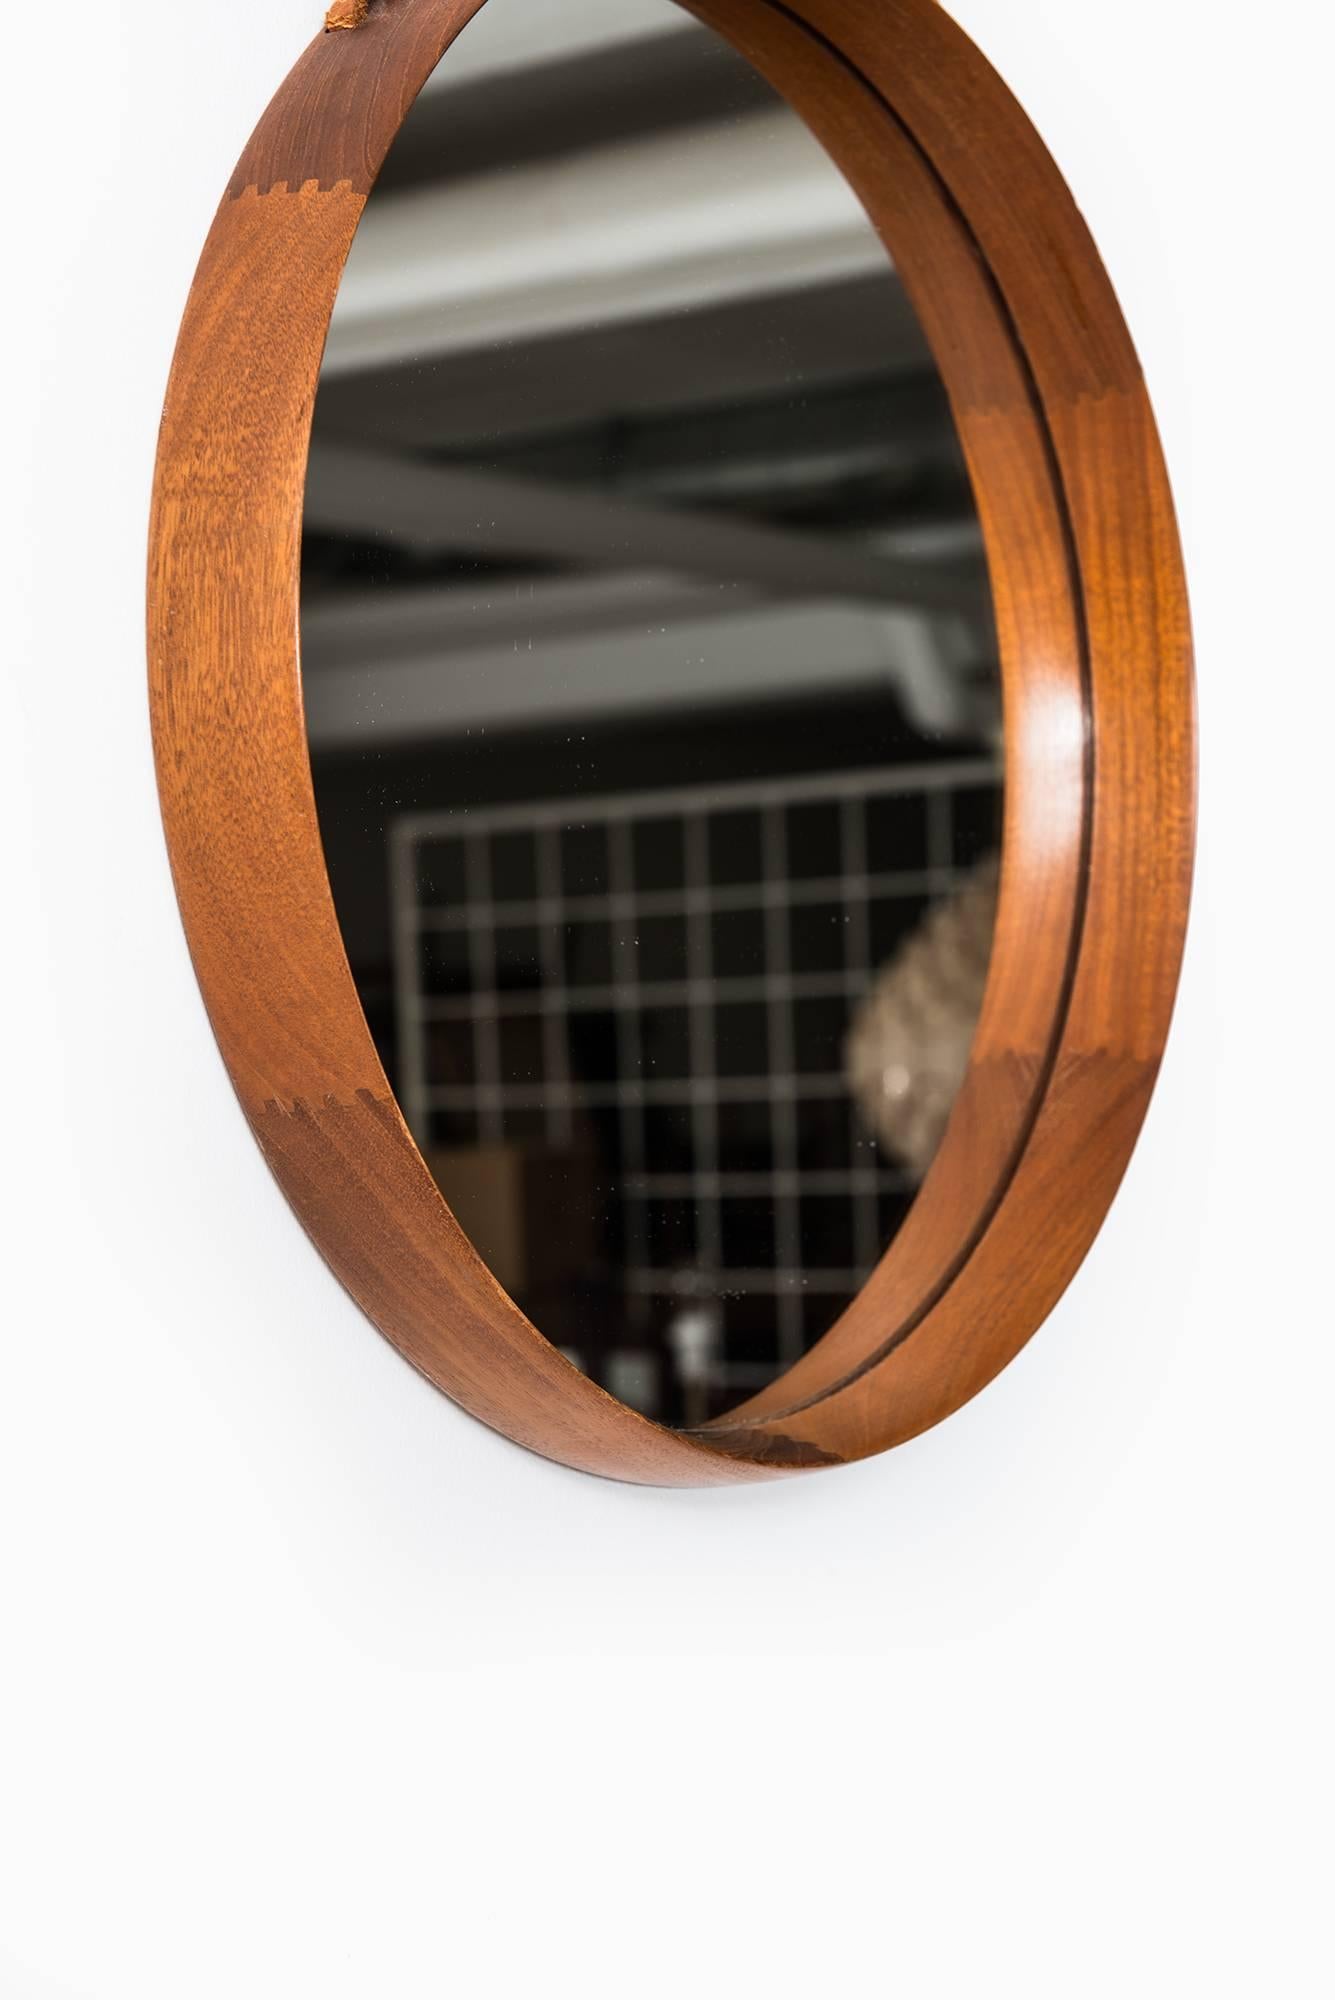 Miroir rond en teck et cuir conçu par Uno & Östen Kristiansson. Produit par Luxus à Vittsjö, Suède.